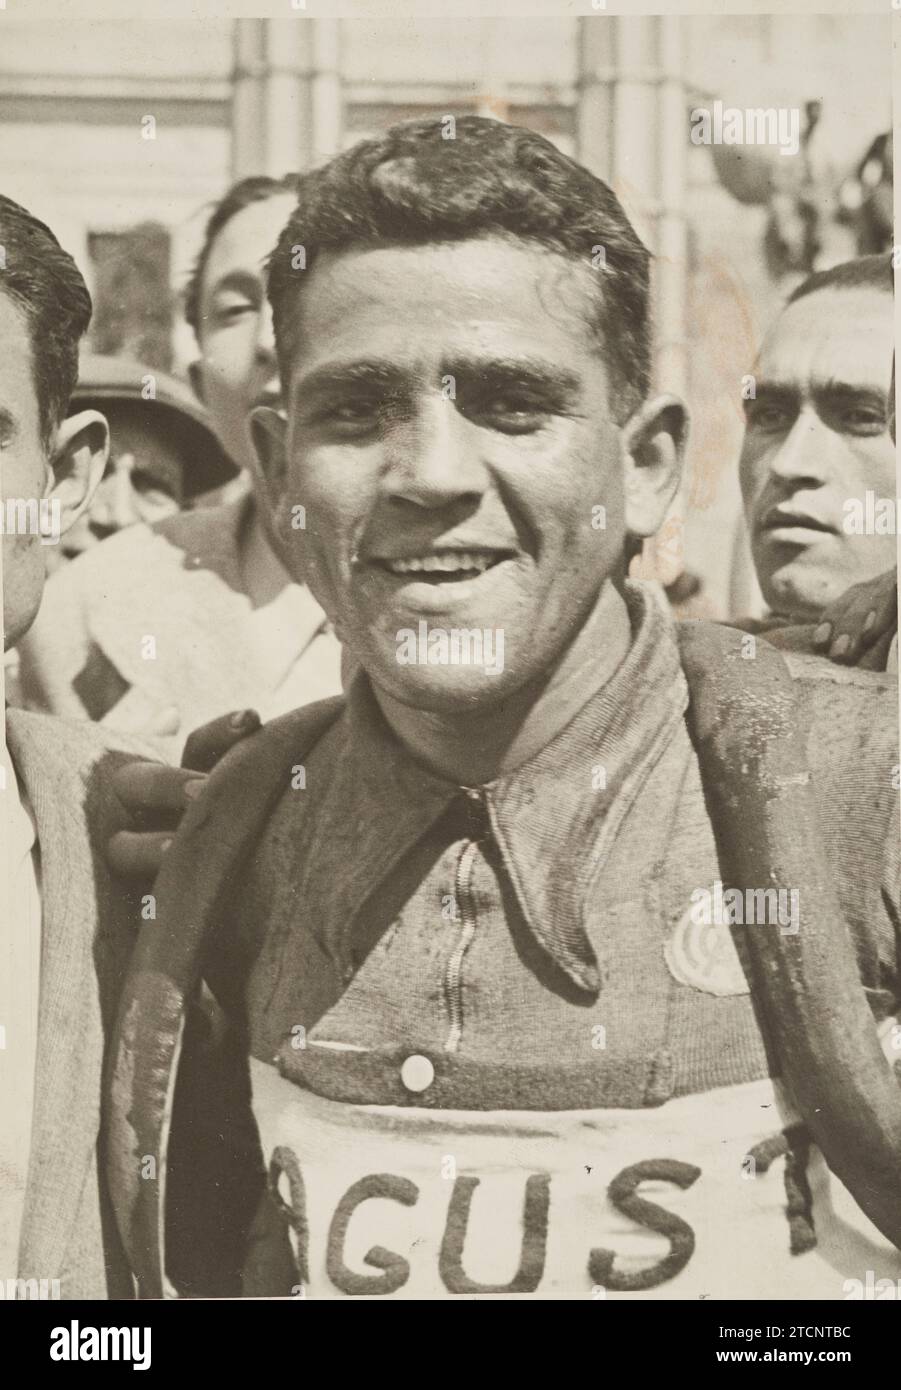 Barcellona, maggio 1932. Il ciclista Vicente Carretero. Sulla camicia del corridore, lo scudo del Real Madrid. Crediti: Album / Archivo ABC / Josep Brangulí Foto Stock